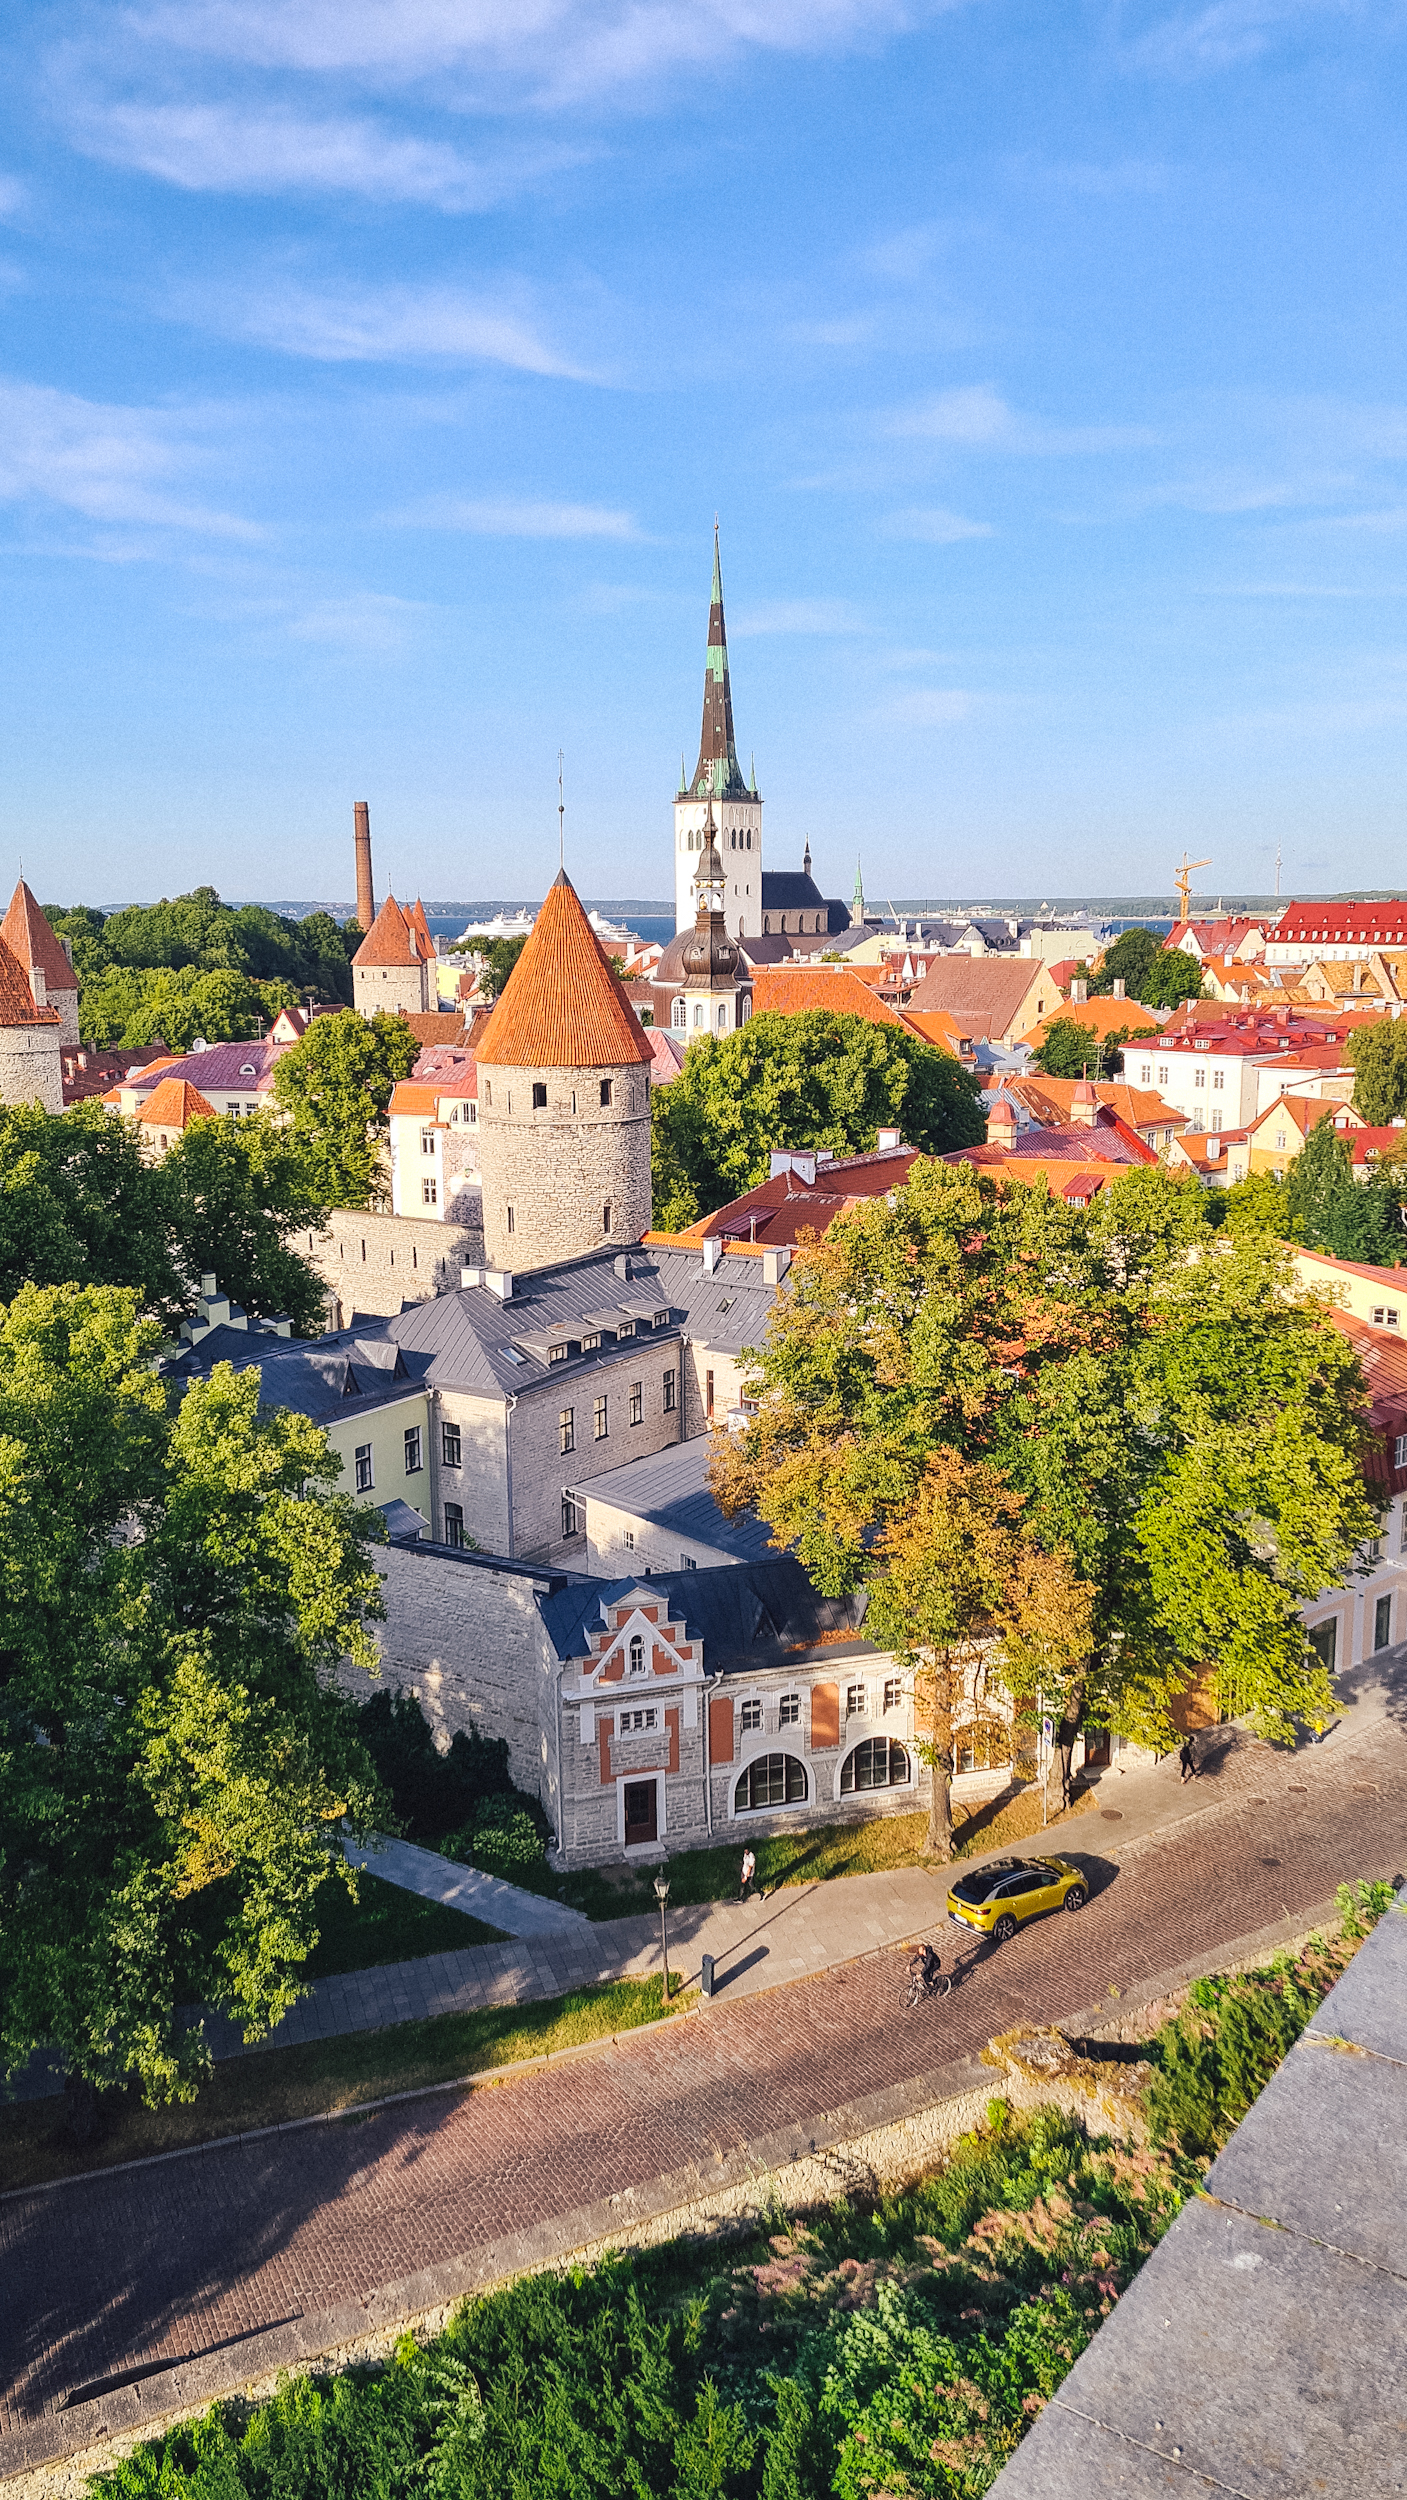 citytrip naar Tallinn tips en to do's